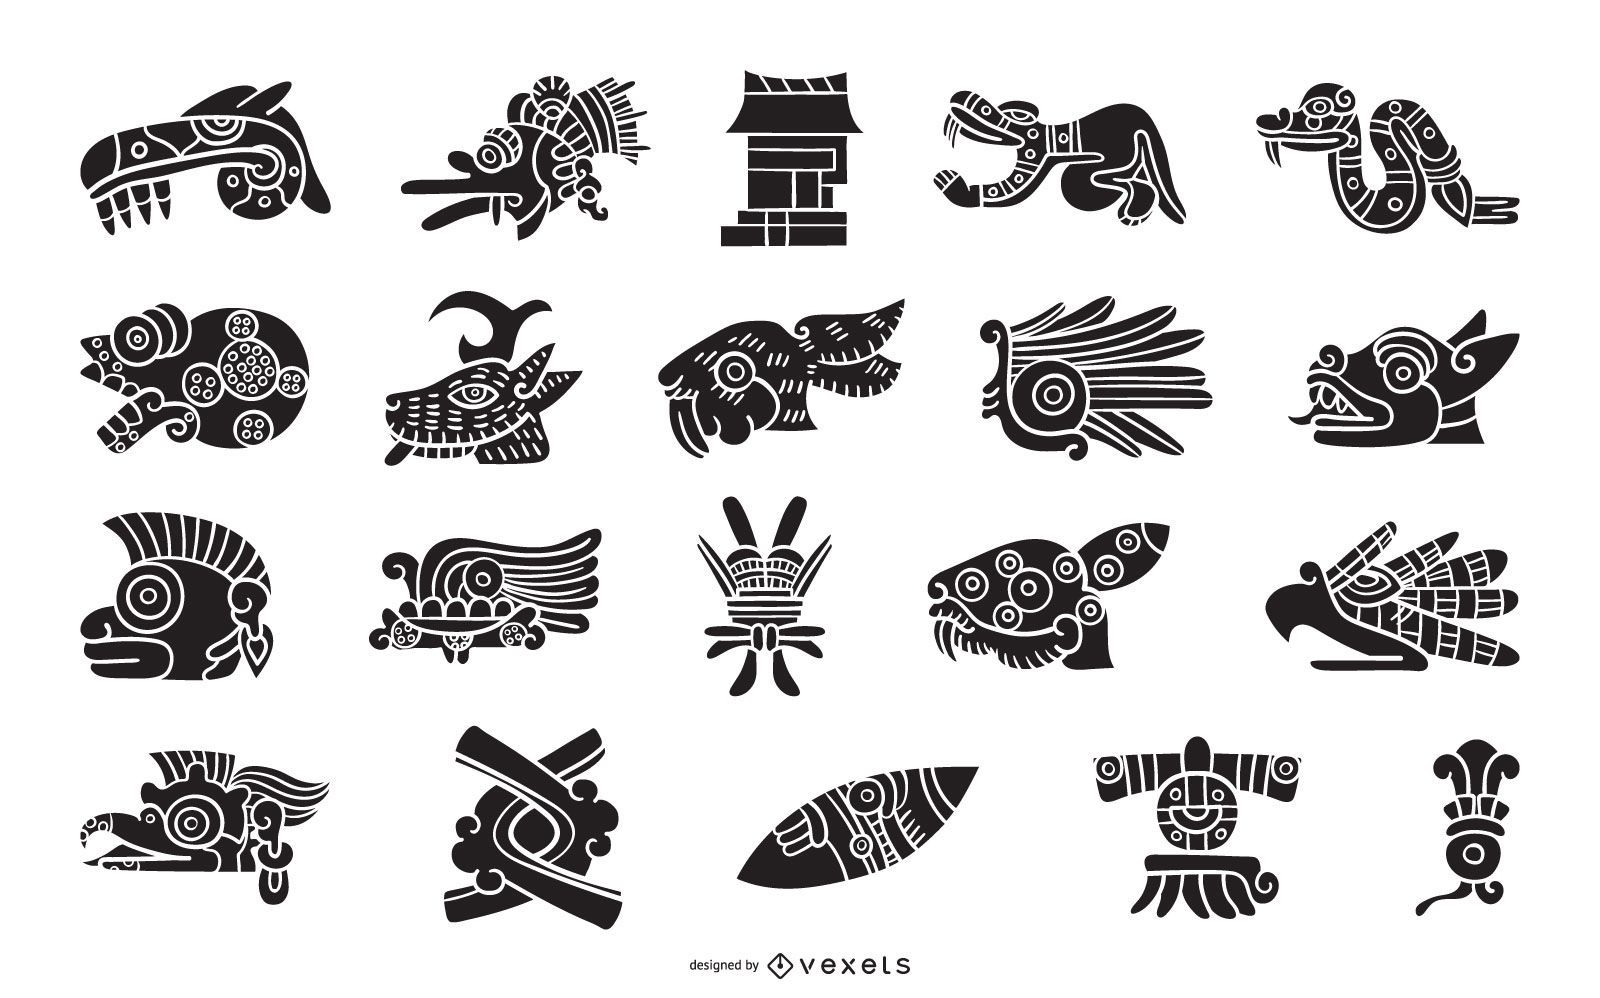 Aztec elements silhouette set